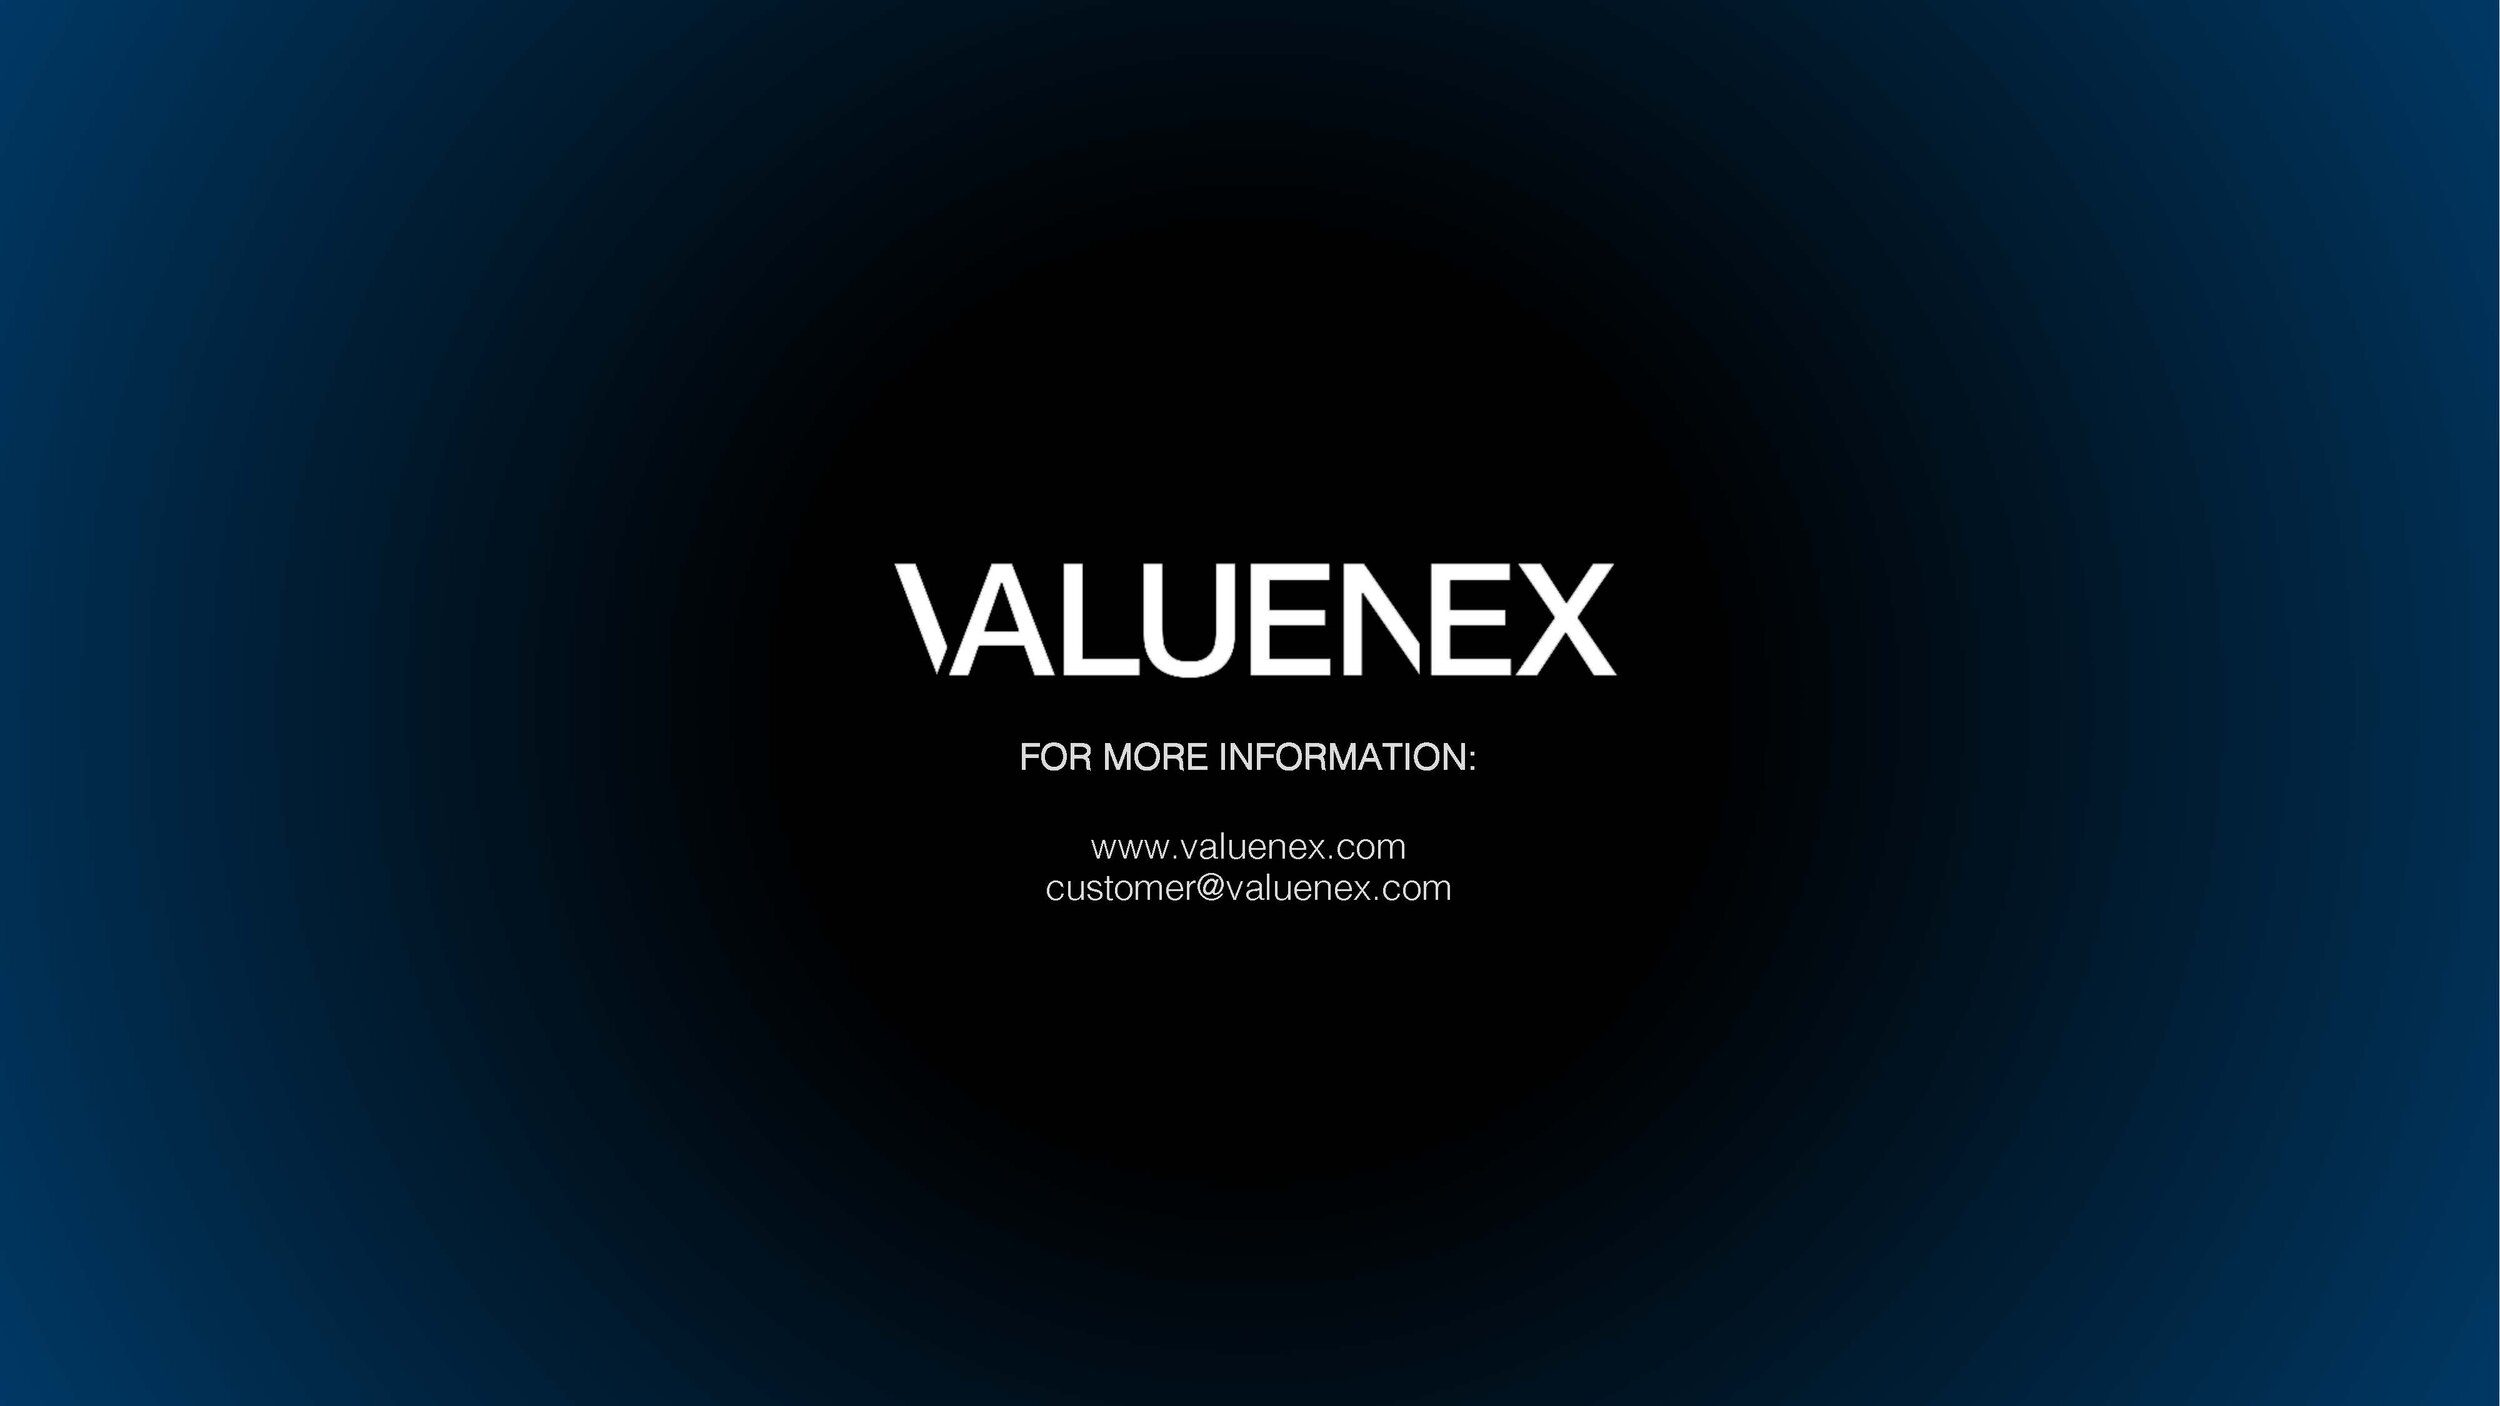 VALUENEX_Innovation Awards_FINAL_MATERIAL_Page_11.jpg